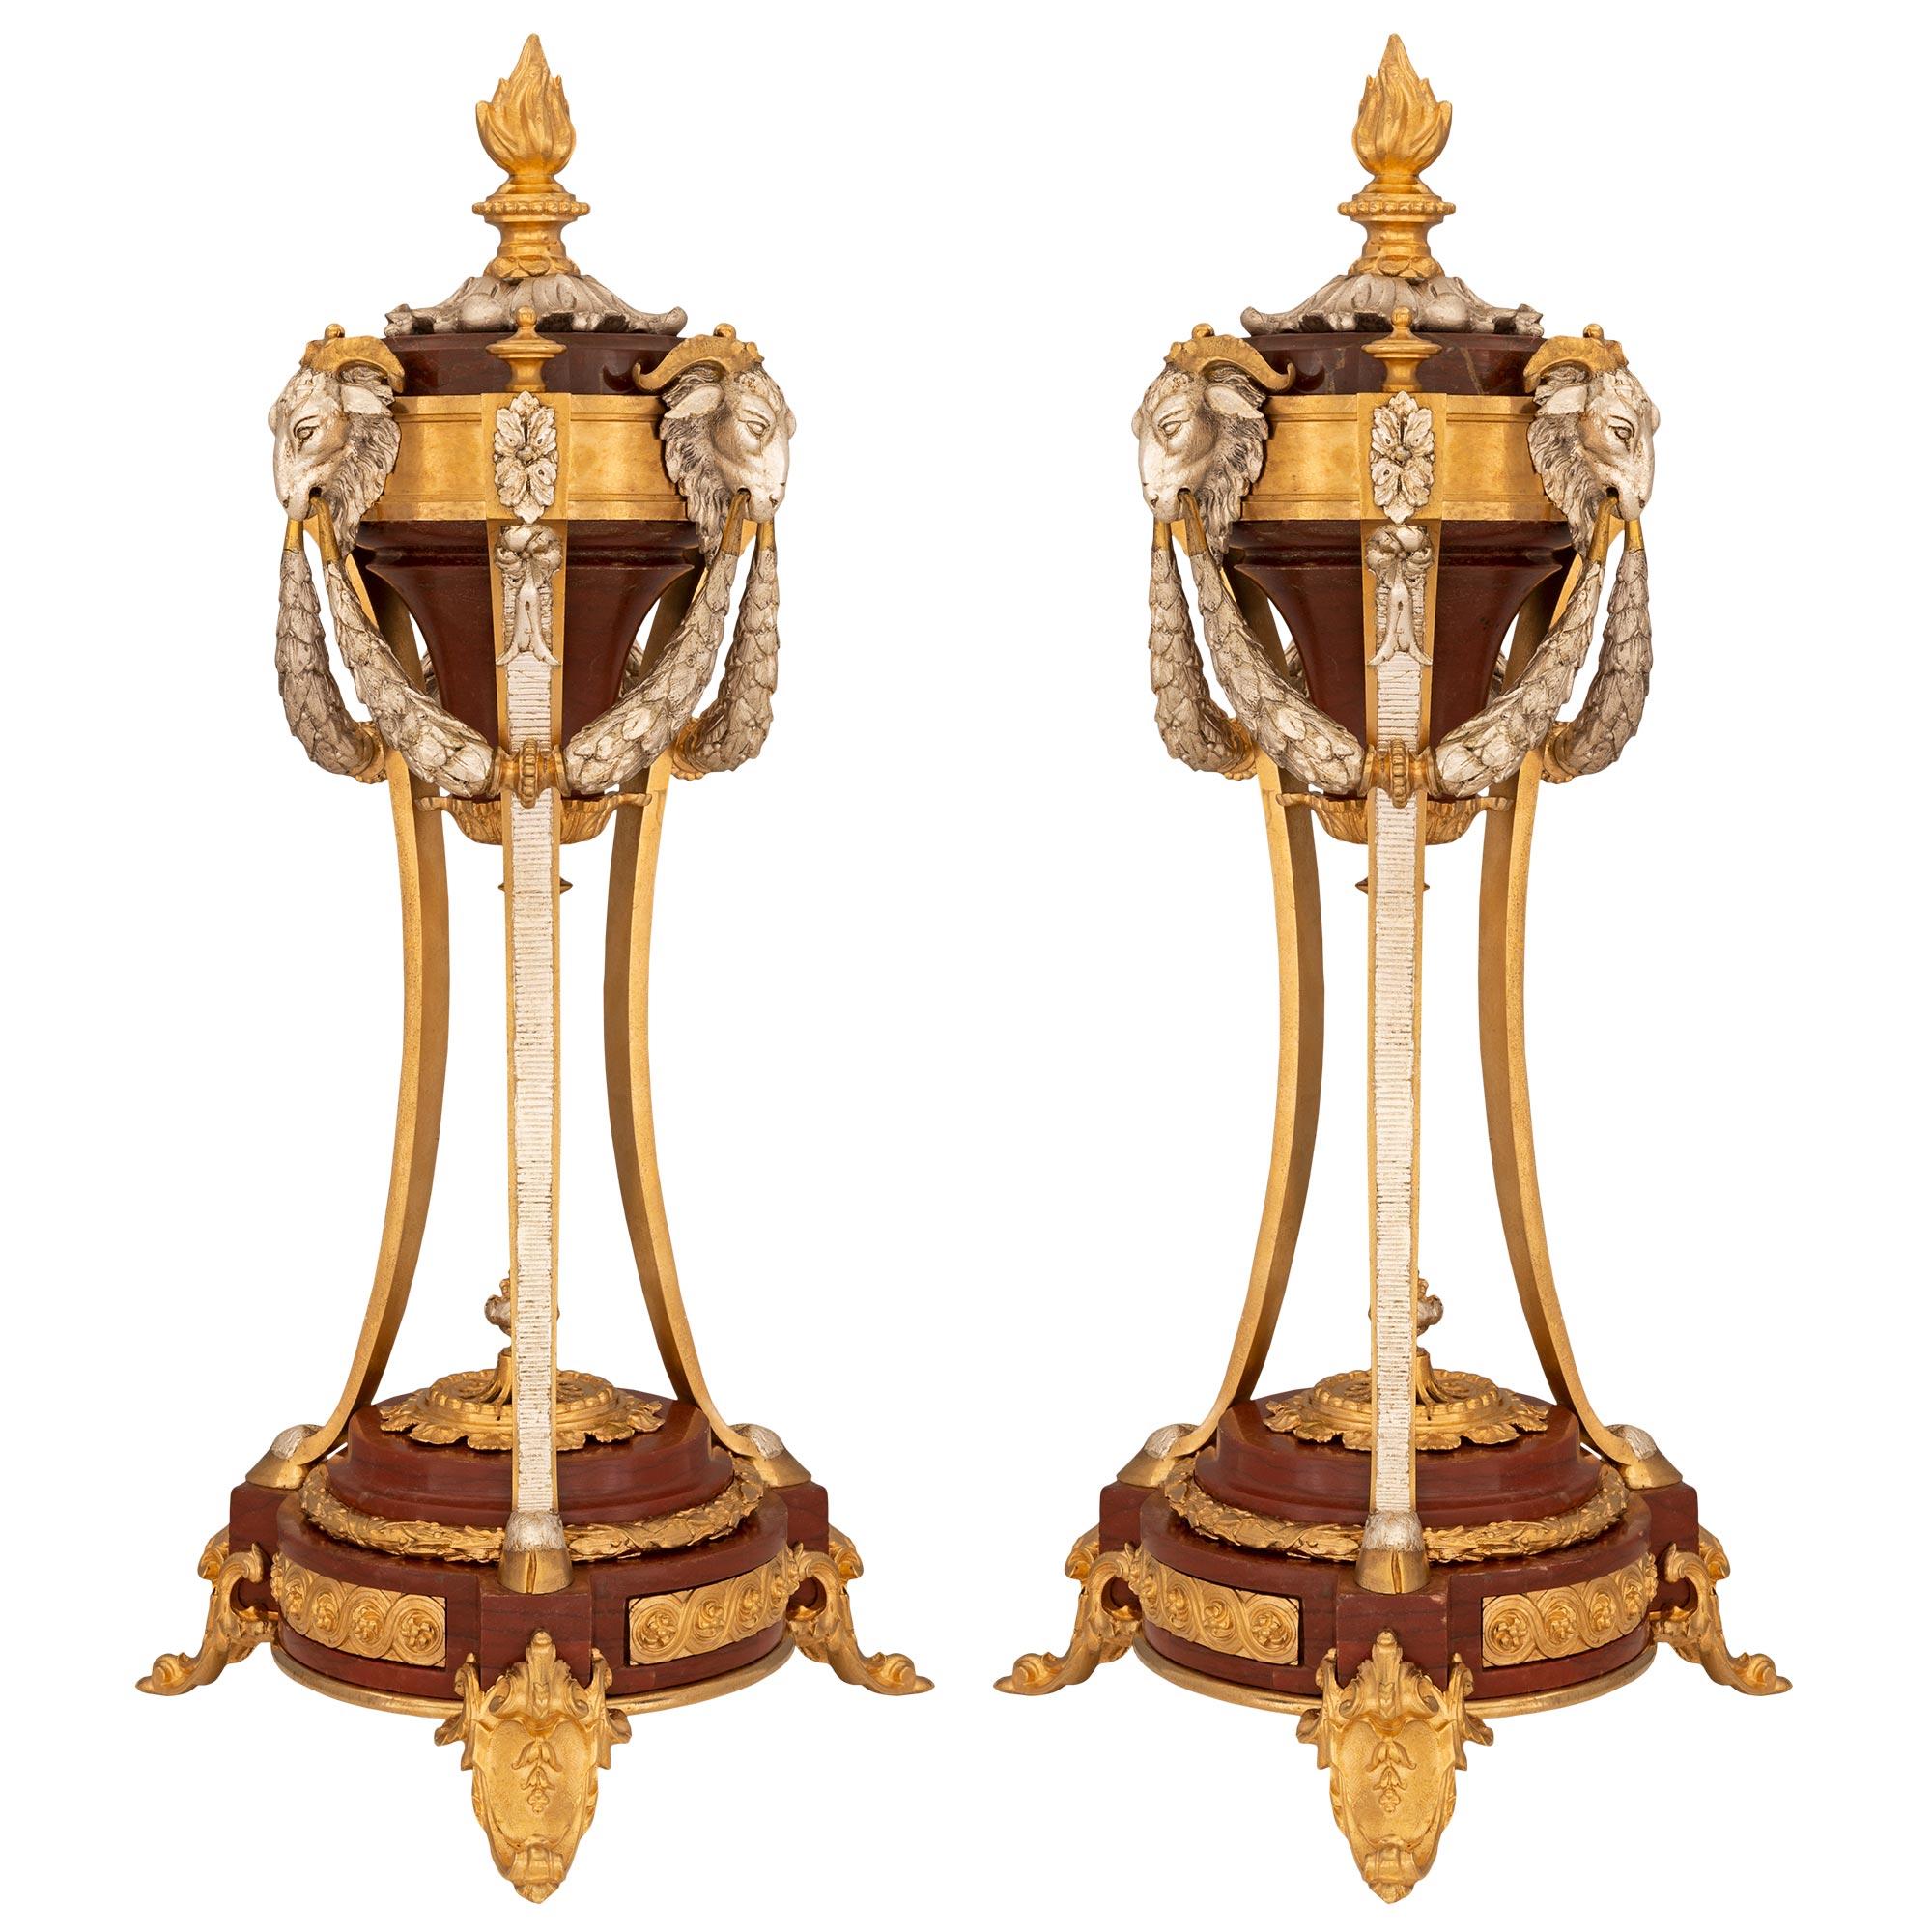 Superbe paire de cassolettes en marbre Rouge Griotte, bronze doré et bronze argenté d'époque Louis XVI et Belle Époque. Chaque cassolette est surélevée par une étonnante base en marbre Rouge Griotte avec de superbes plaques en bronze doré ajustées